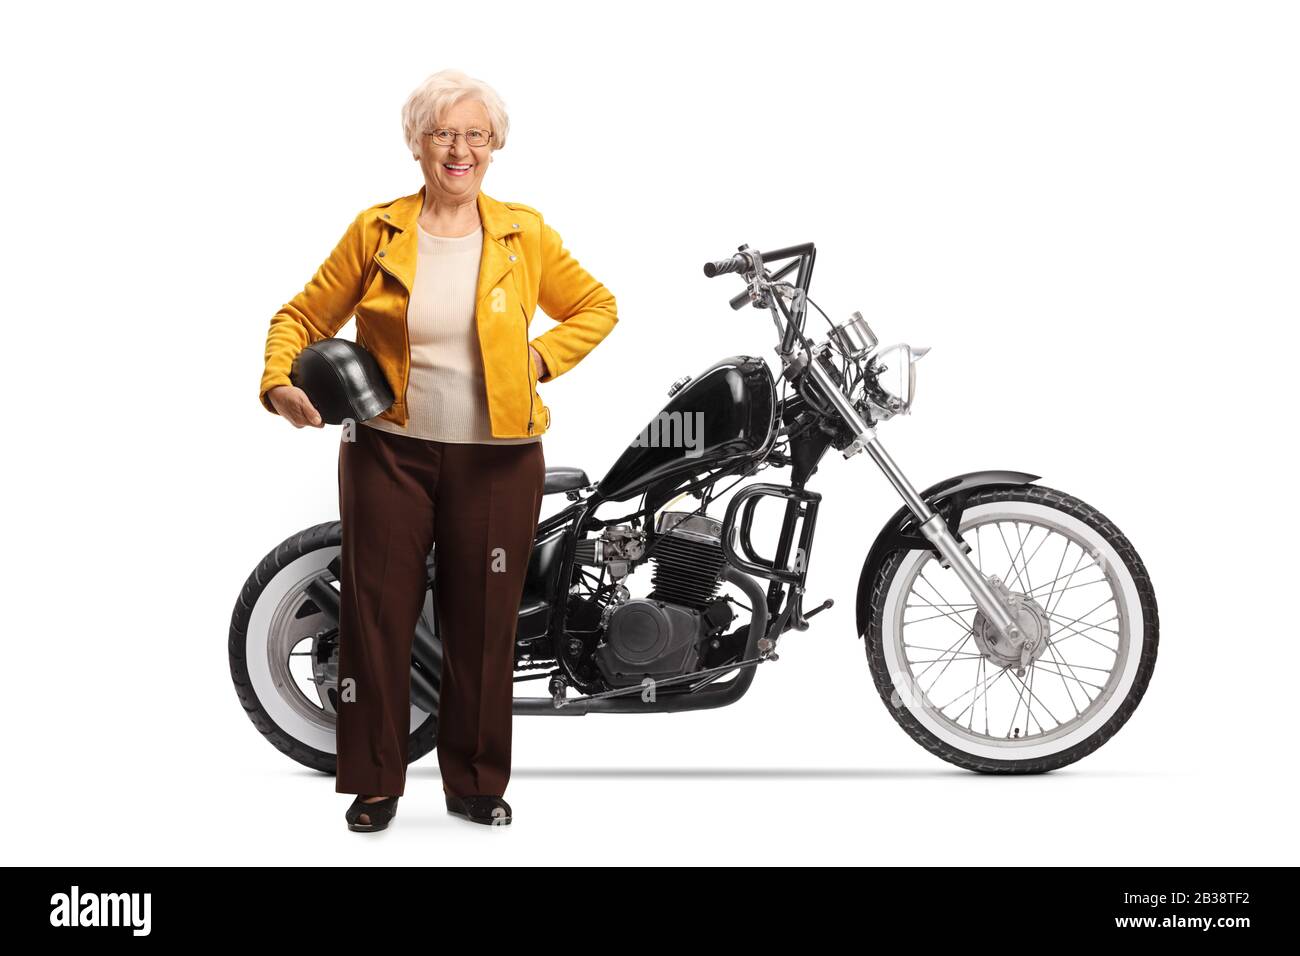 Portrait complet d'une femme mûre tenant un casque et se tenant à côté d'une moto de hachoir personnalisée isolée sur fond blanc Banque D'Images